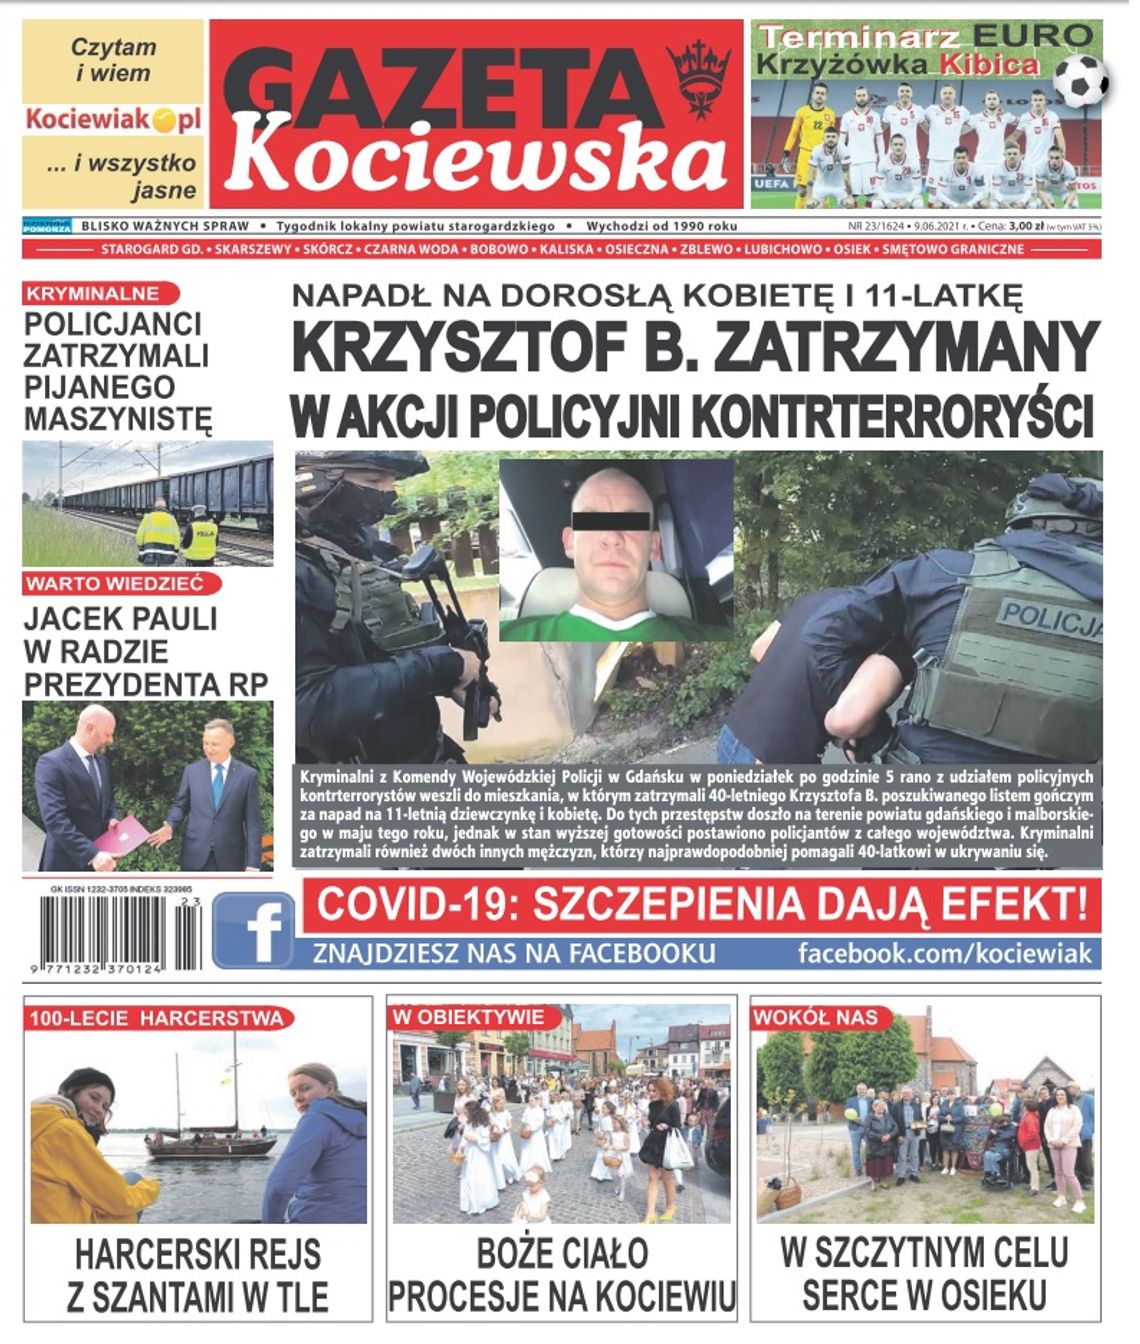 Najnowszy numer Gazety Kociewskiej już w kioskach. A w niej między innymi: